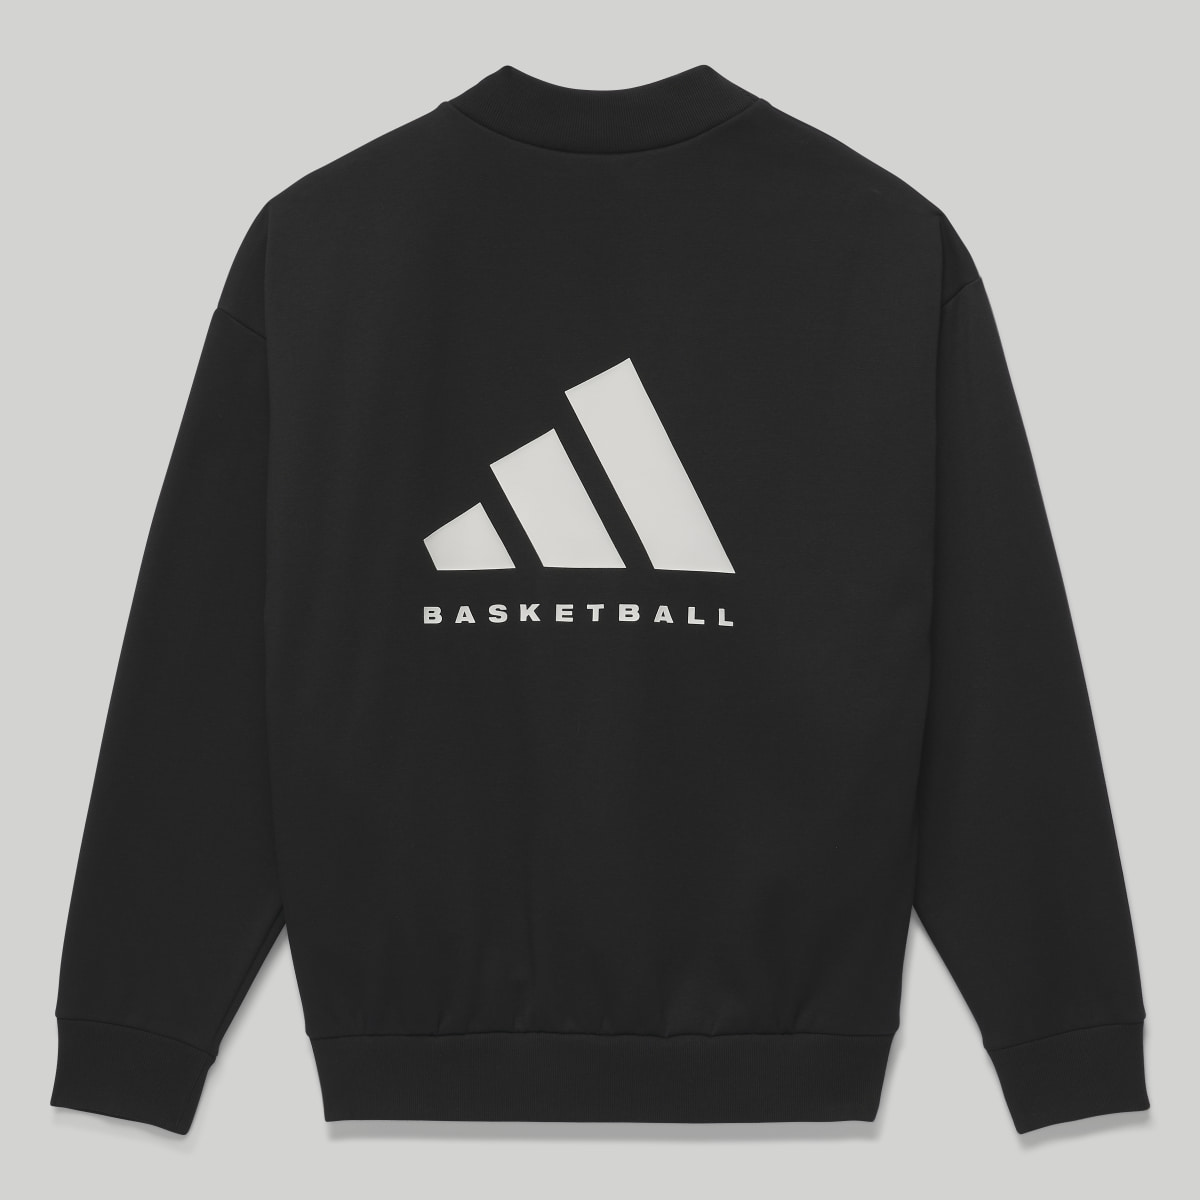 Adidas Basketball Crew Sweatshirt. 4